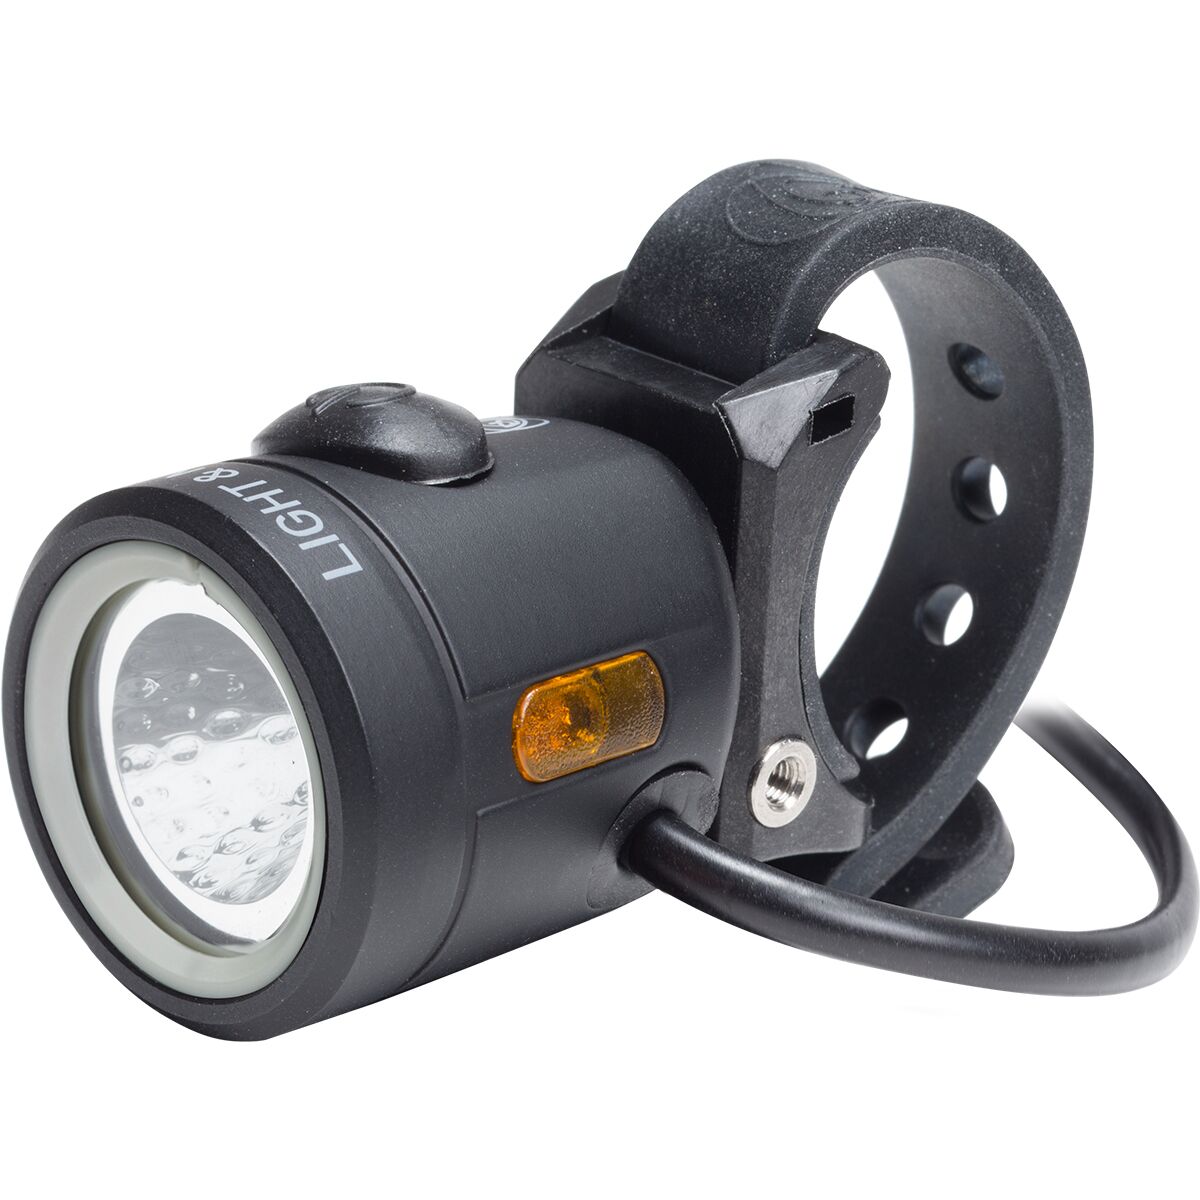 Light & Motion Vis E-500 eBike Headlight